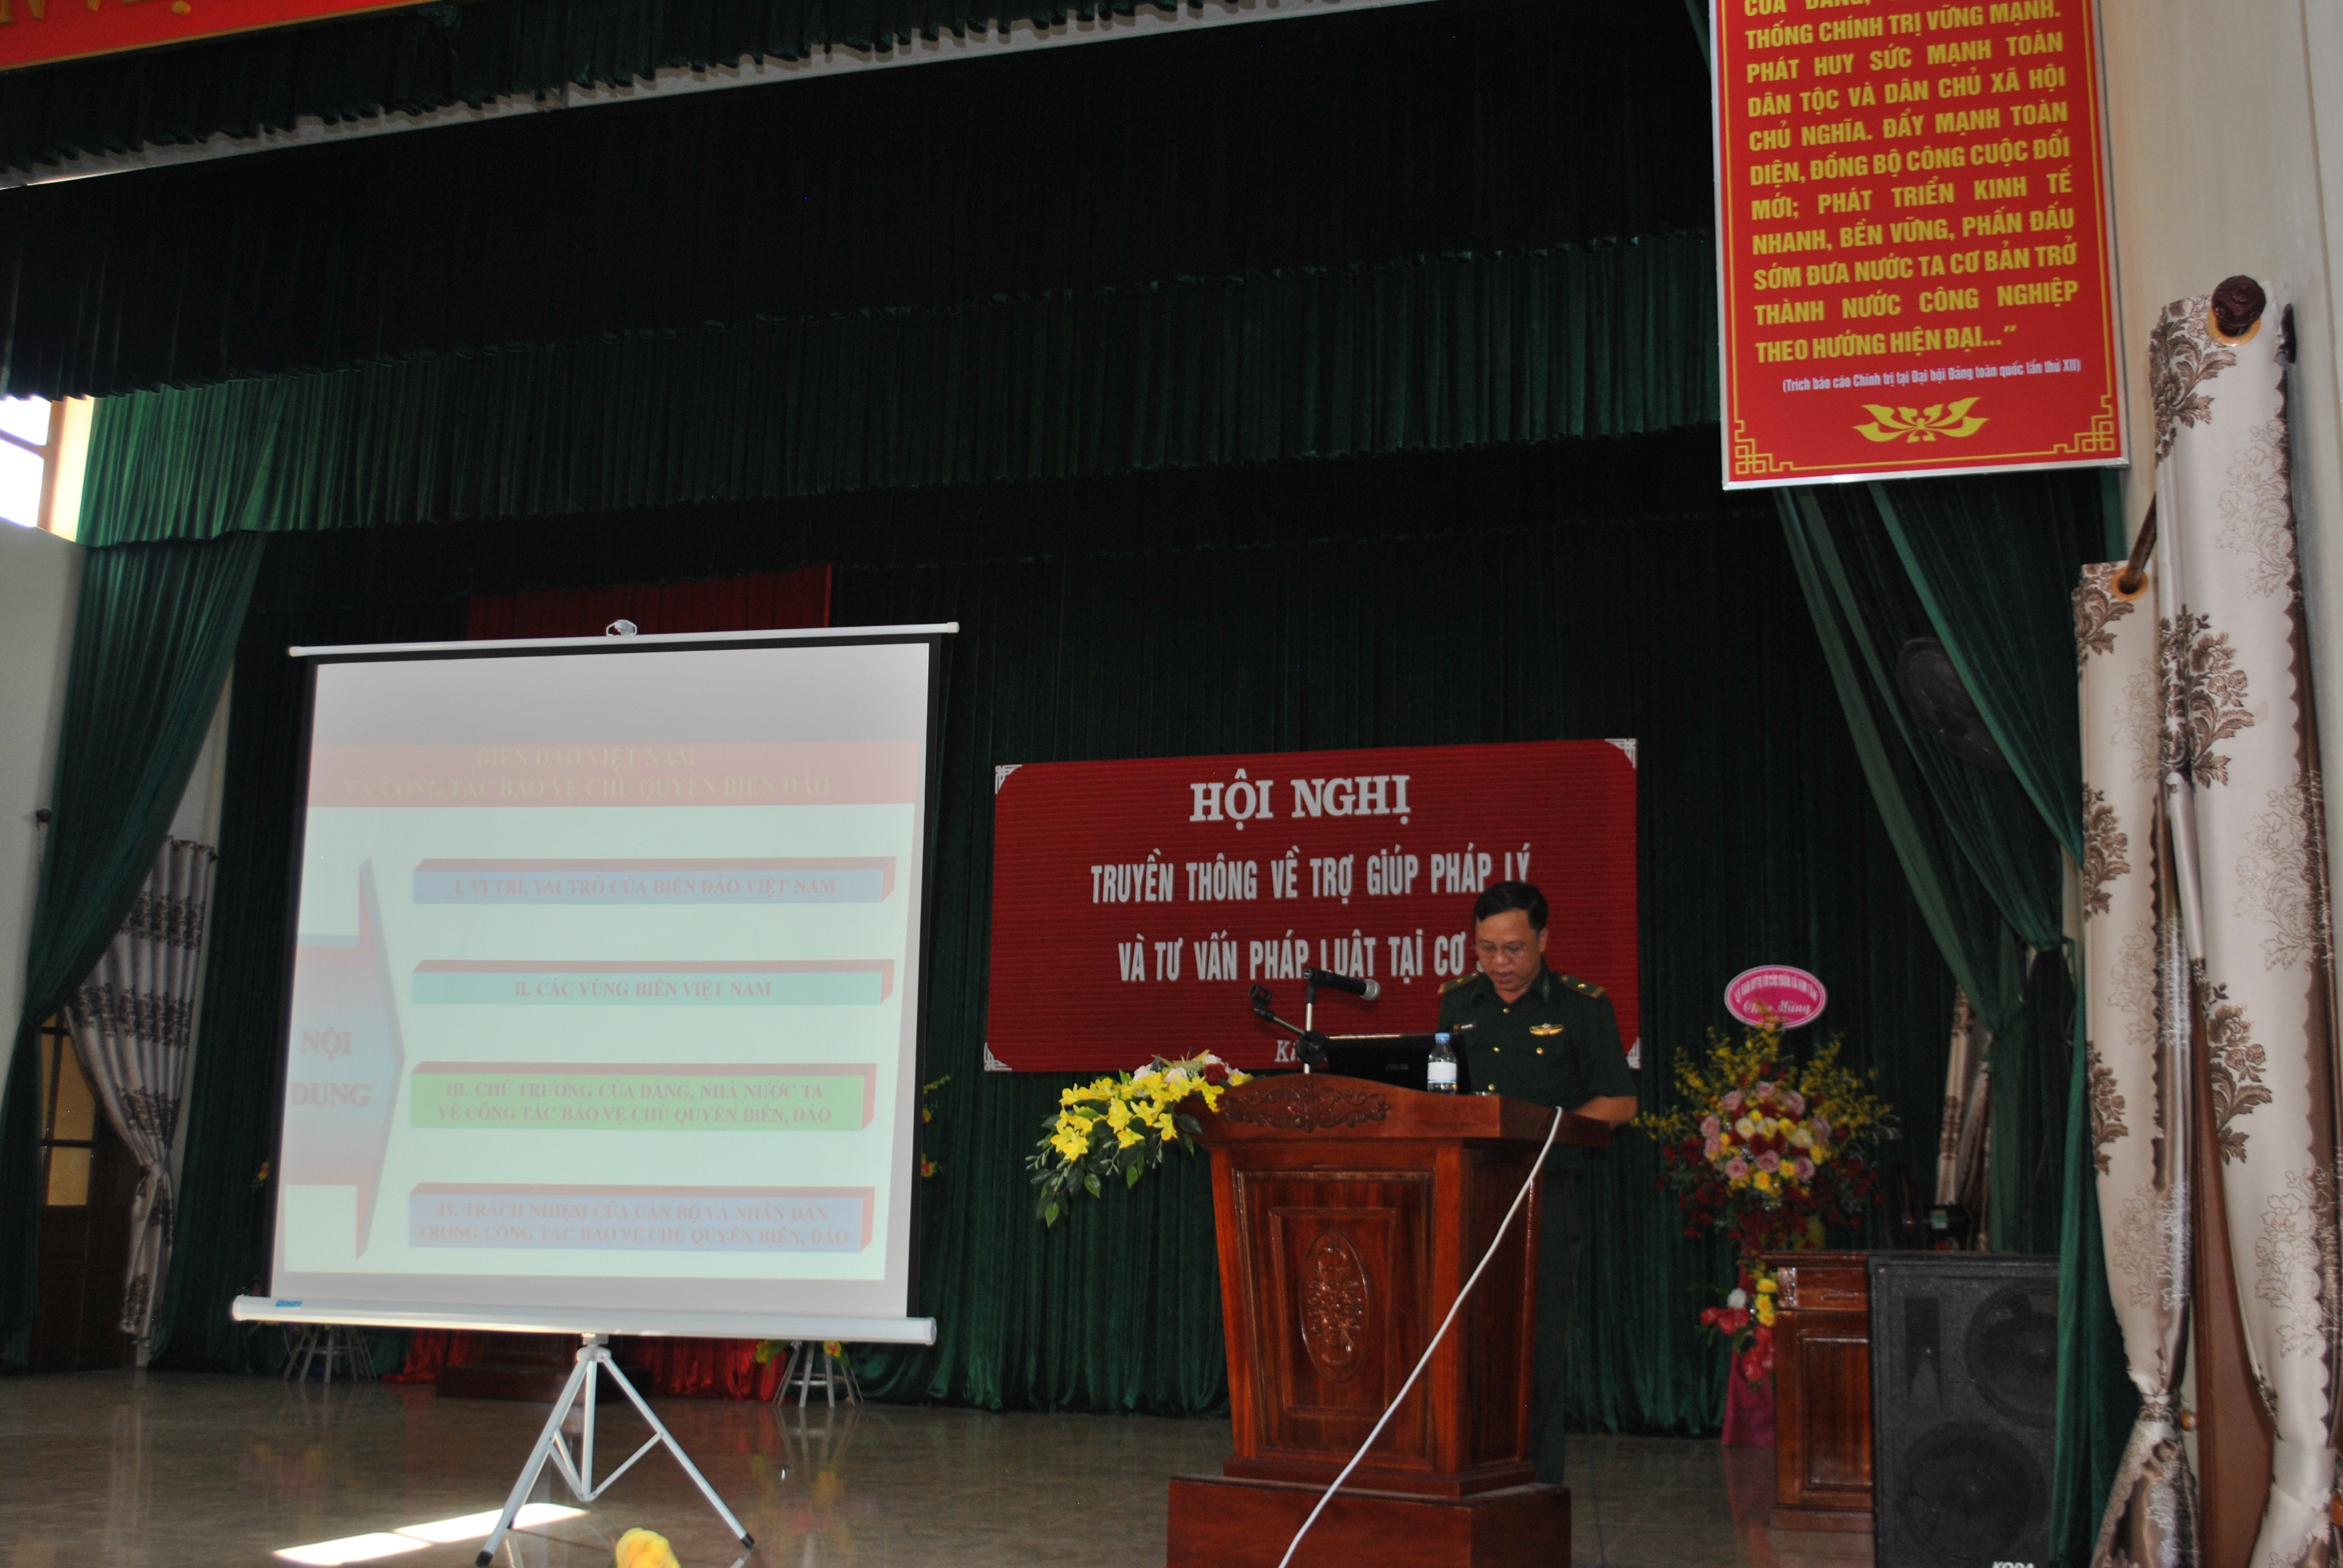 Một số kết quả nổi bật trong công tác phổ biến, giáo dục pháp luật trên địa bàn huyện Kim Sơn 6 tháng đầu năm 2021